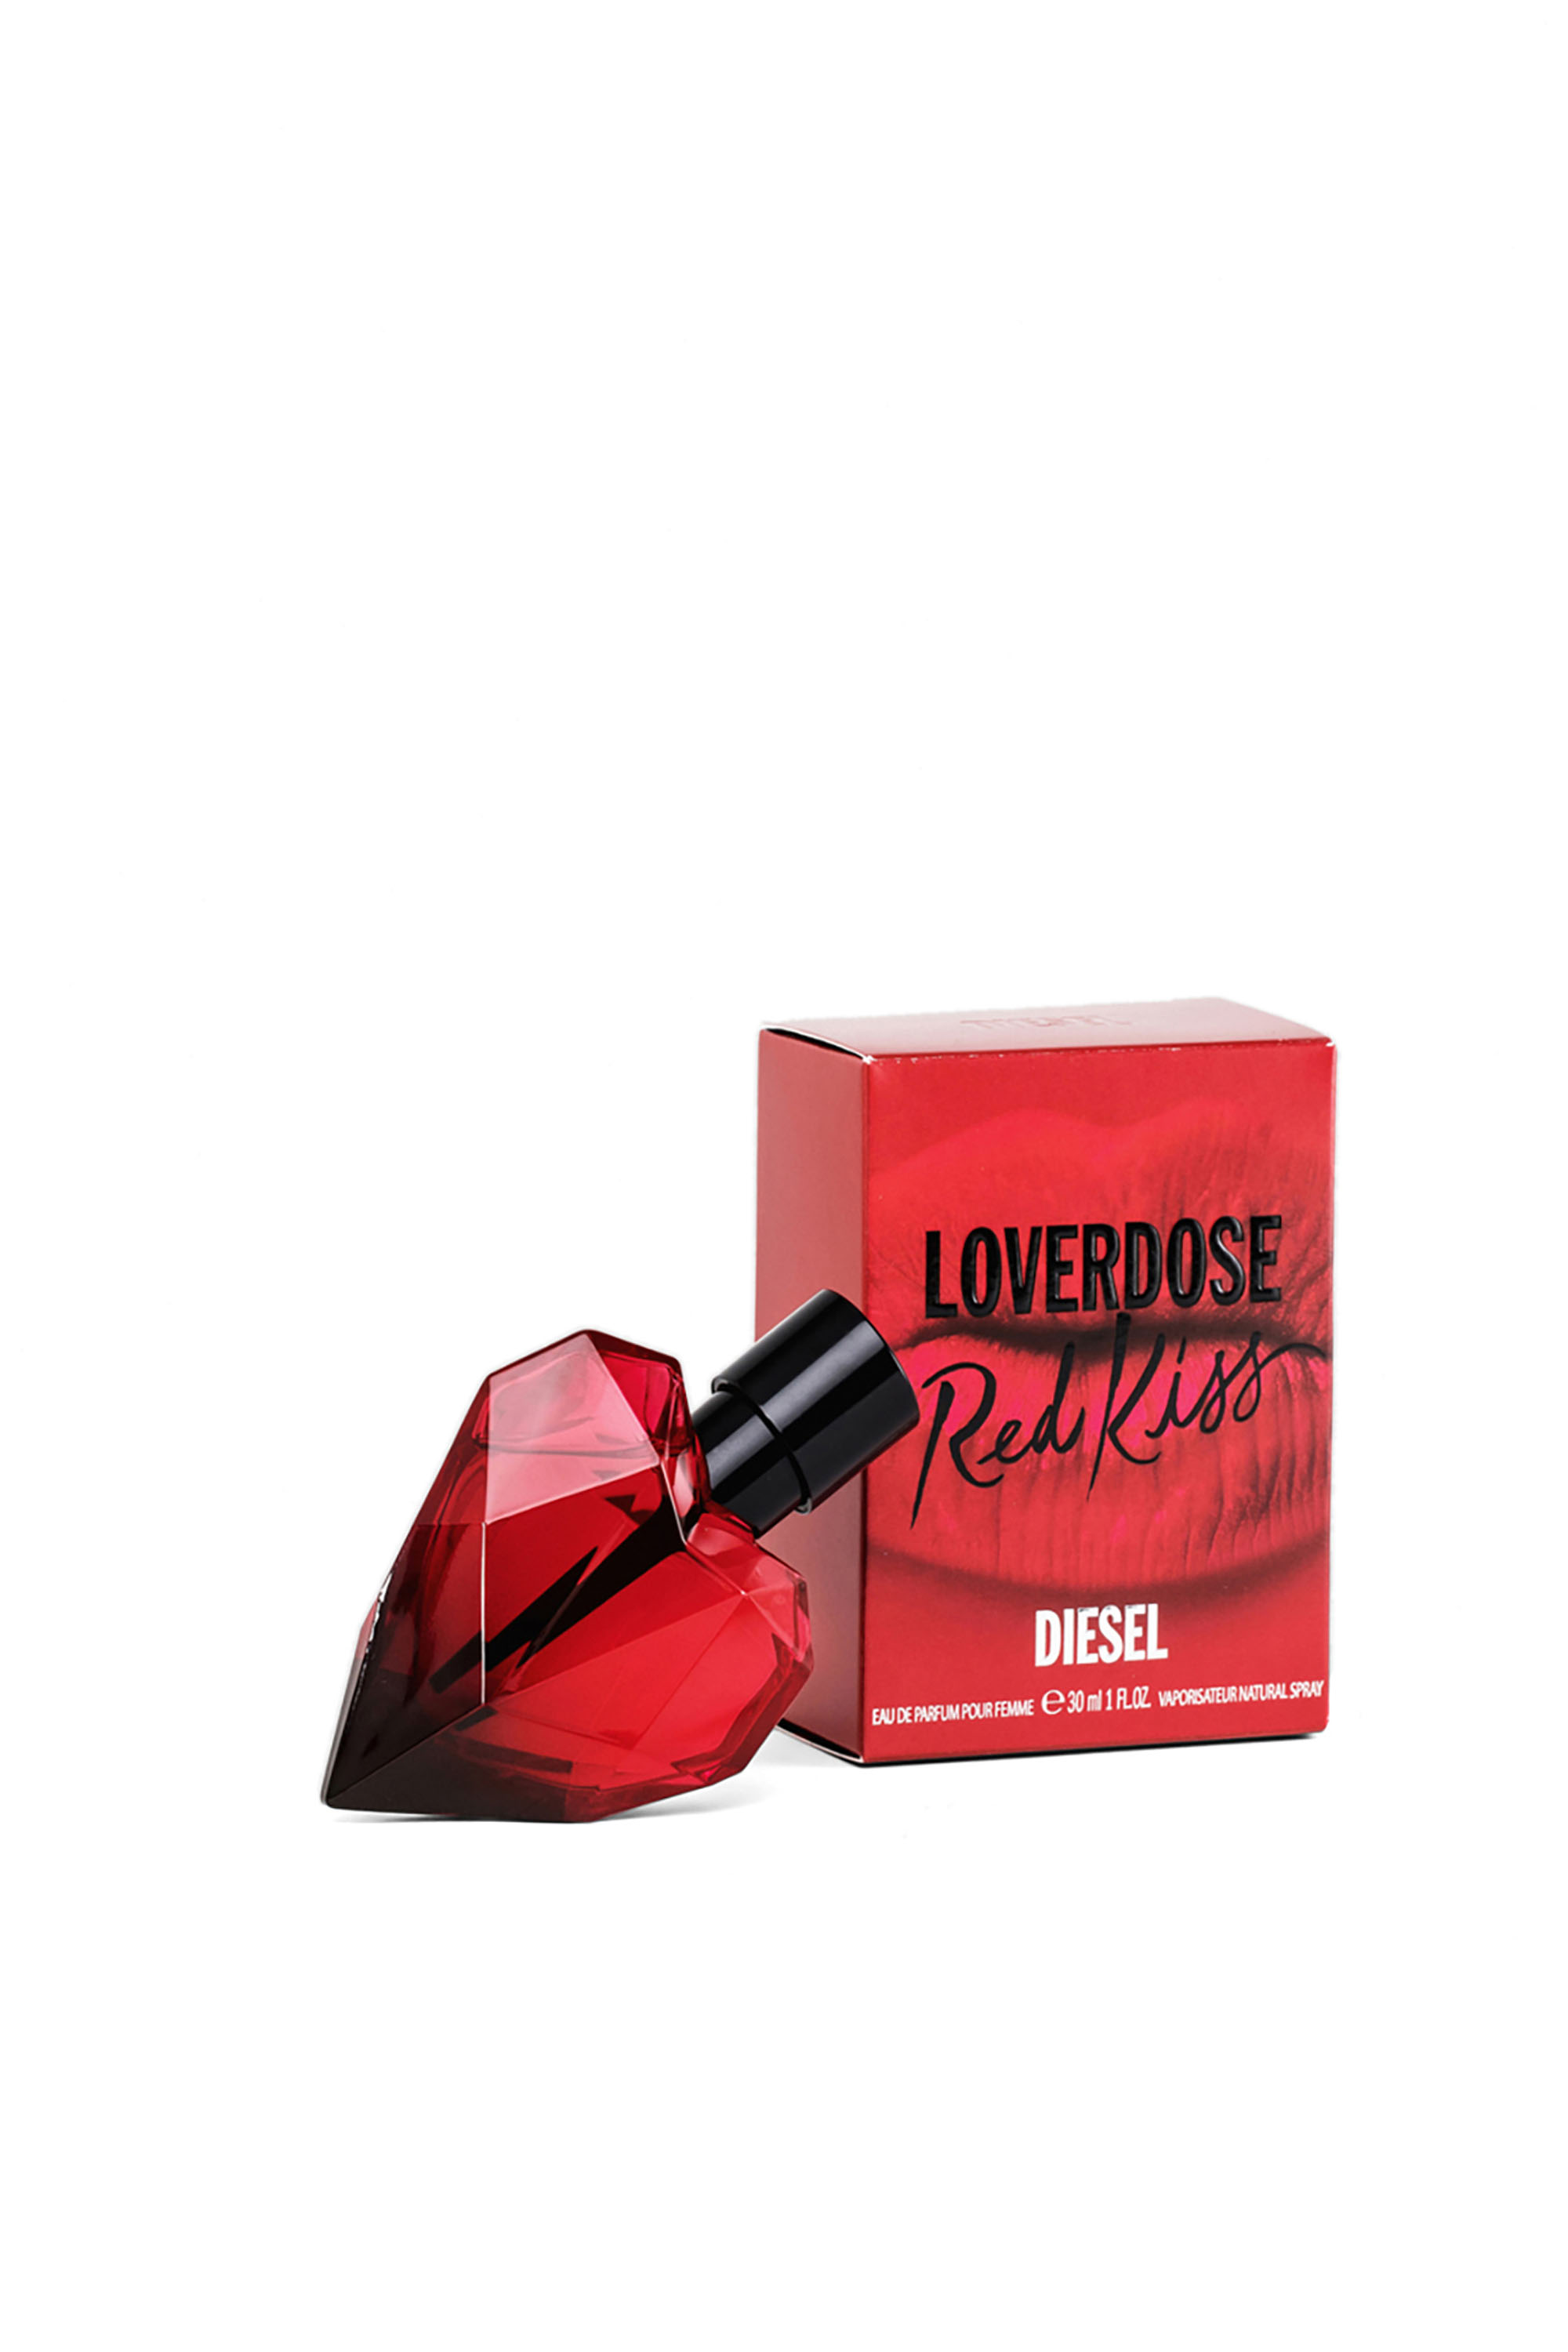 Diesel - LOVERDOSE RED KISS EAU DE PARFUM 30ML,  - Image 2